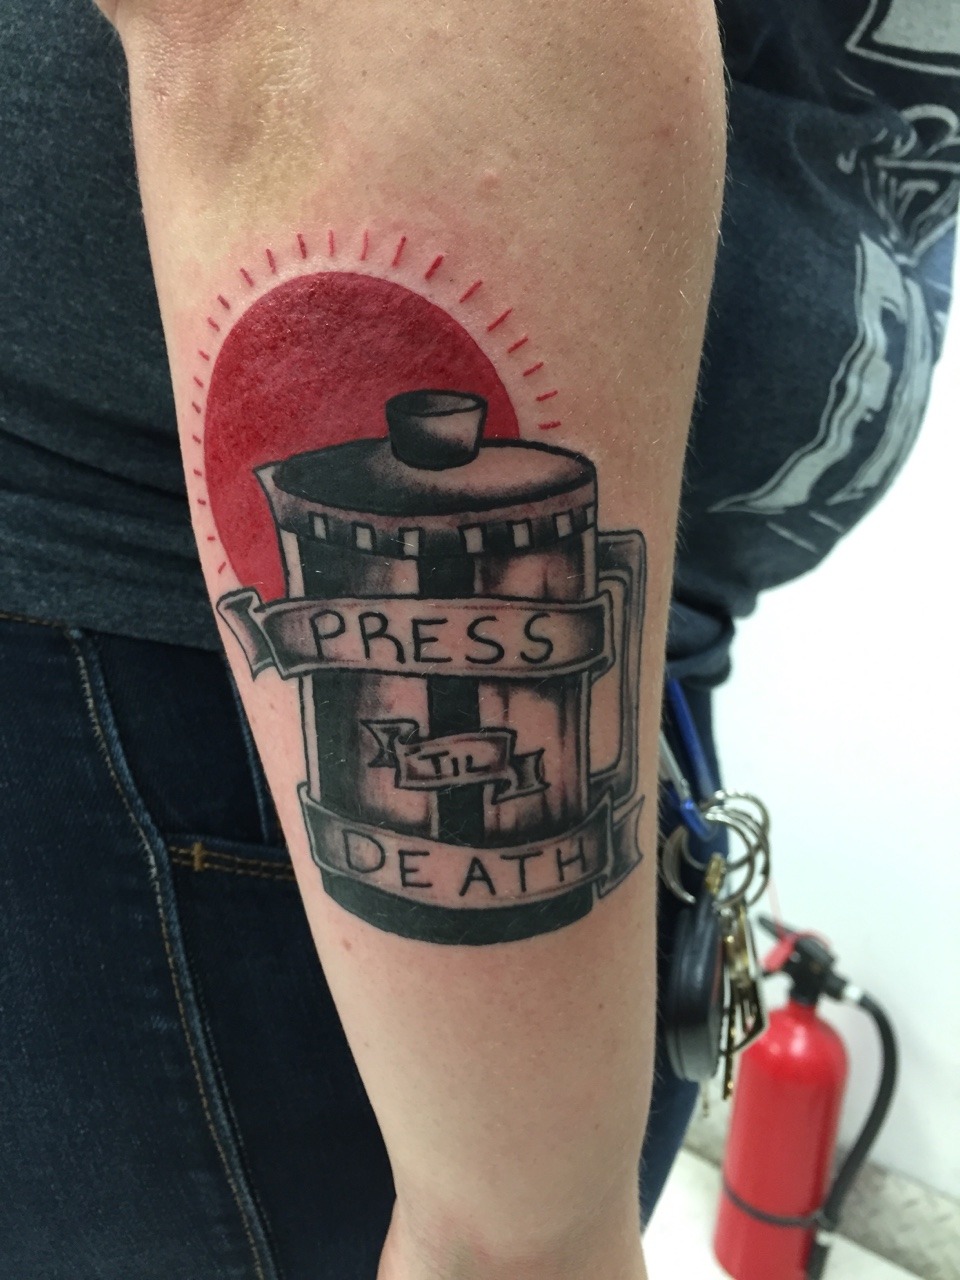 Andrew Patterson at Avenue tattoo studio Wichita Falls Tx Instagram  studioavenue  Black and grey tattoos Tattoo studio Patterson